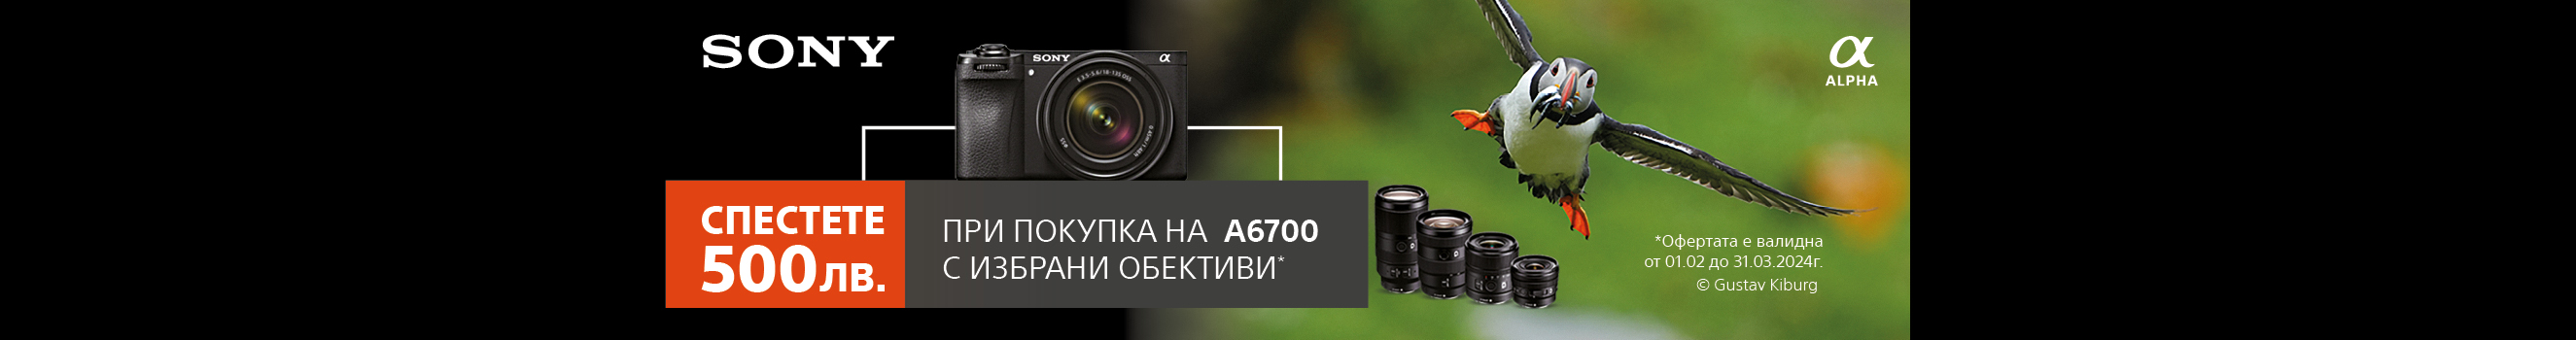 Вземете избрани обективи с 500 лв. отстъпка всеки при покупка заедно с фотоапарат Sony A6700 до 31.03 